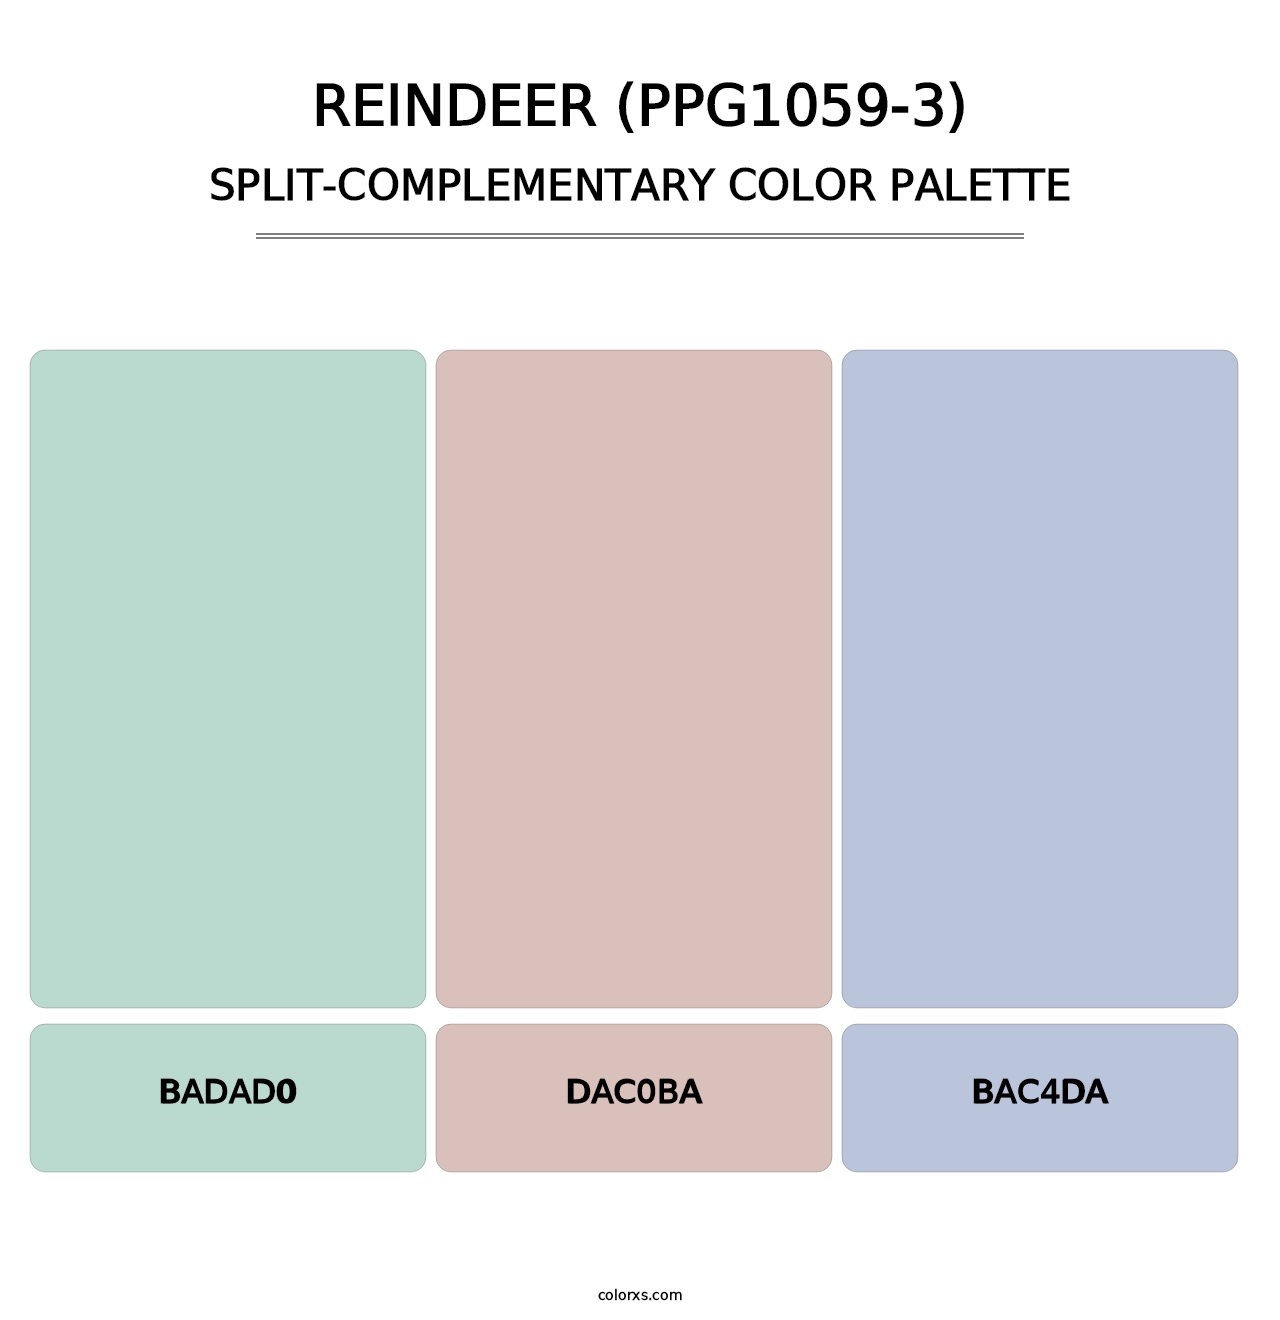 Reindeer (PPG1059-3) - Split-Complementary Color Palette